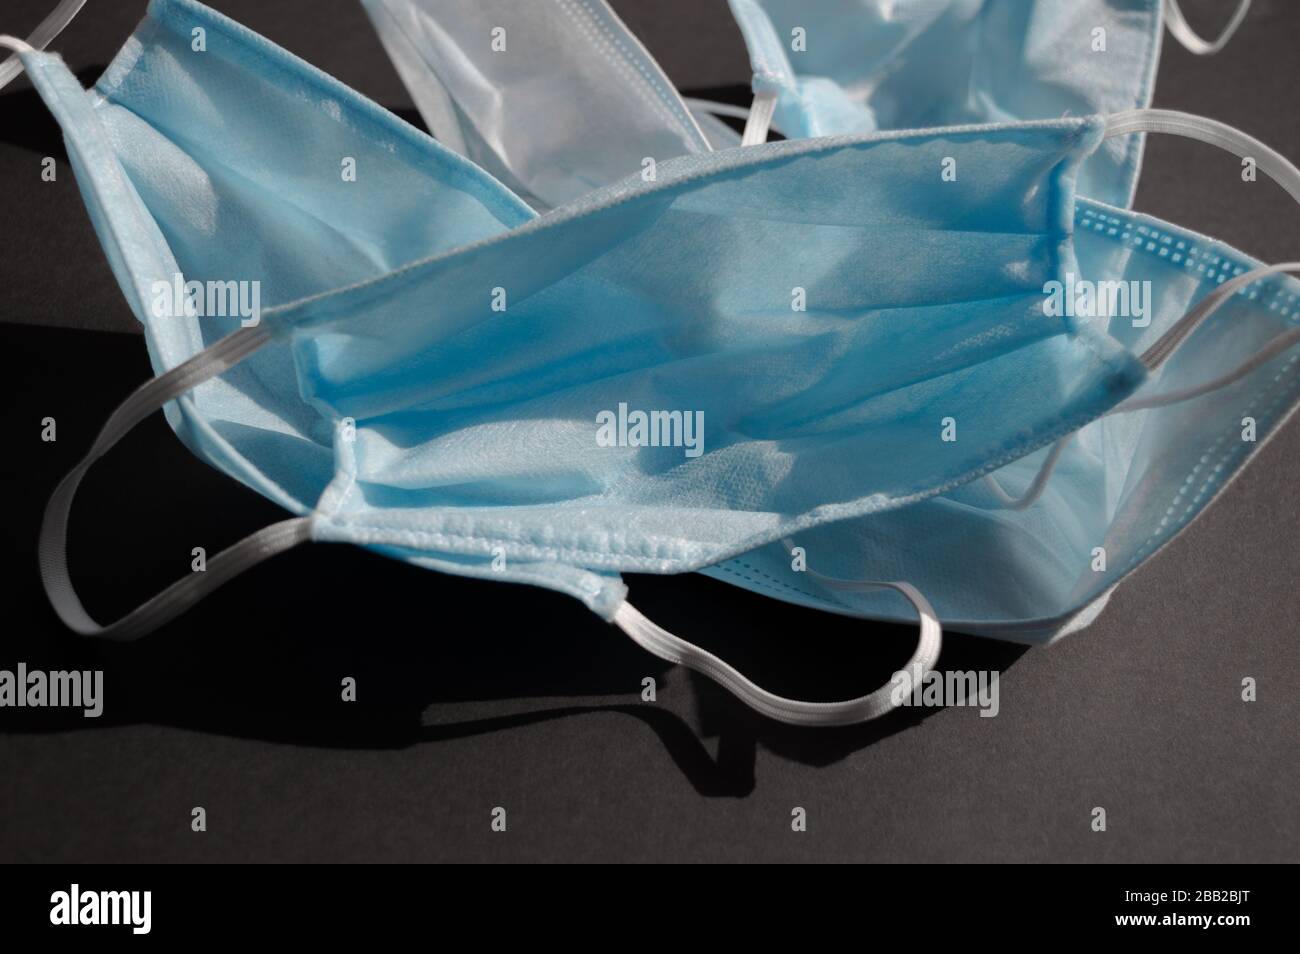 Cinq masques médicaux jetables utilisés en bleu clair sur fond noir foncé contre le virus covid-2019. Concept de soins de santé, quarantaine, arrêt Banque D'Images